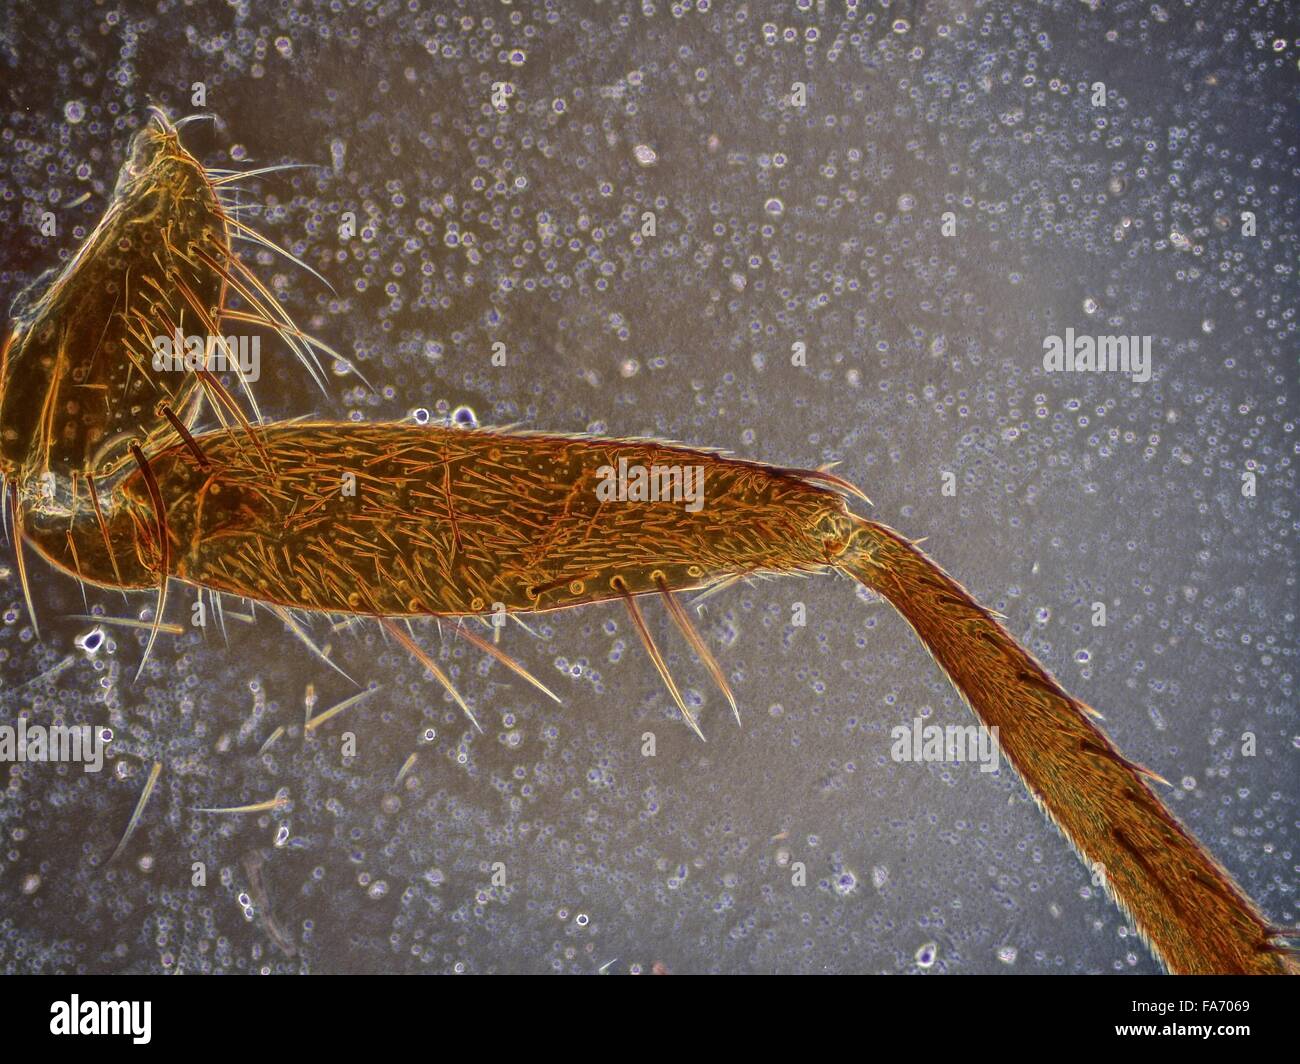 La beauté de la biologie sous microscope électronique Banque D'Images